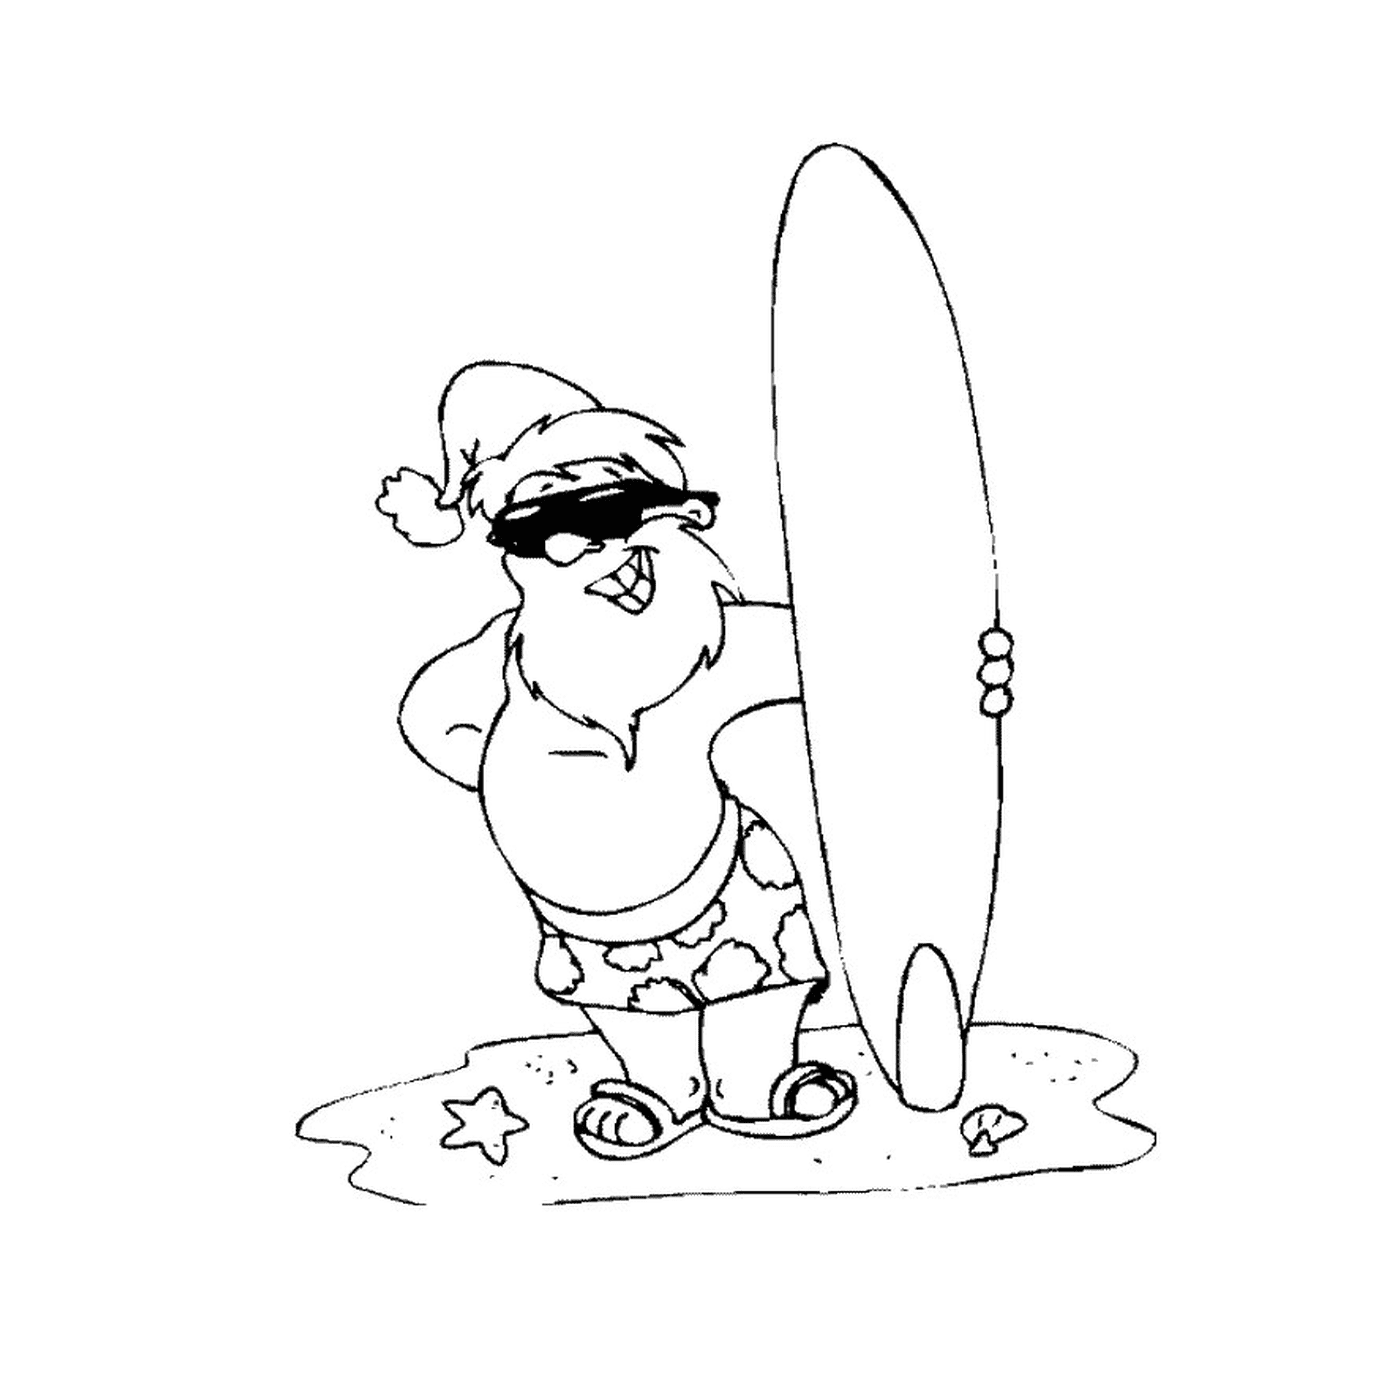  Санта держит доску для серфинга 